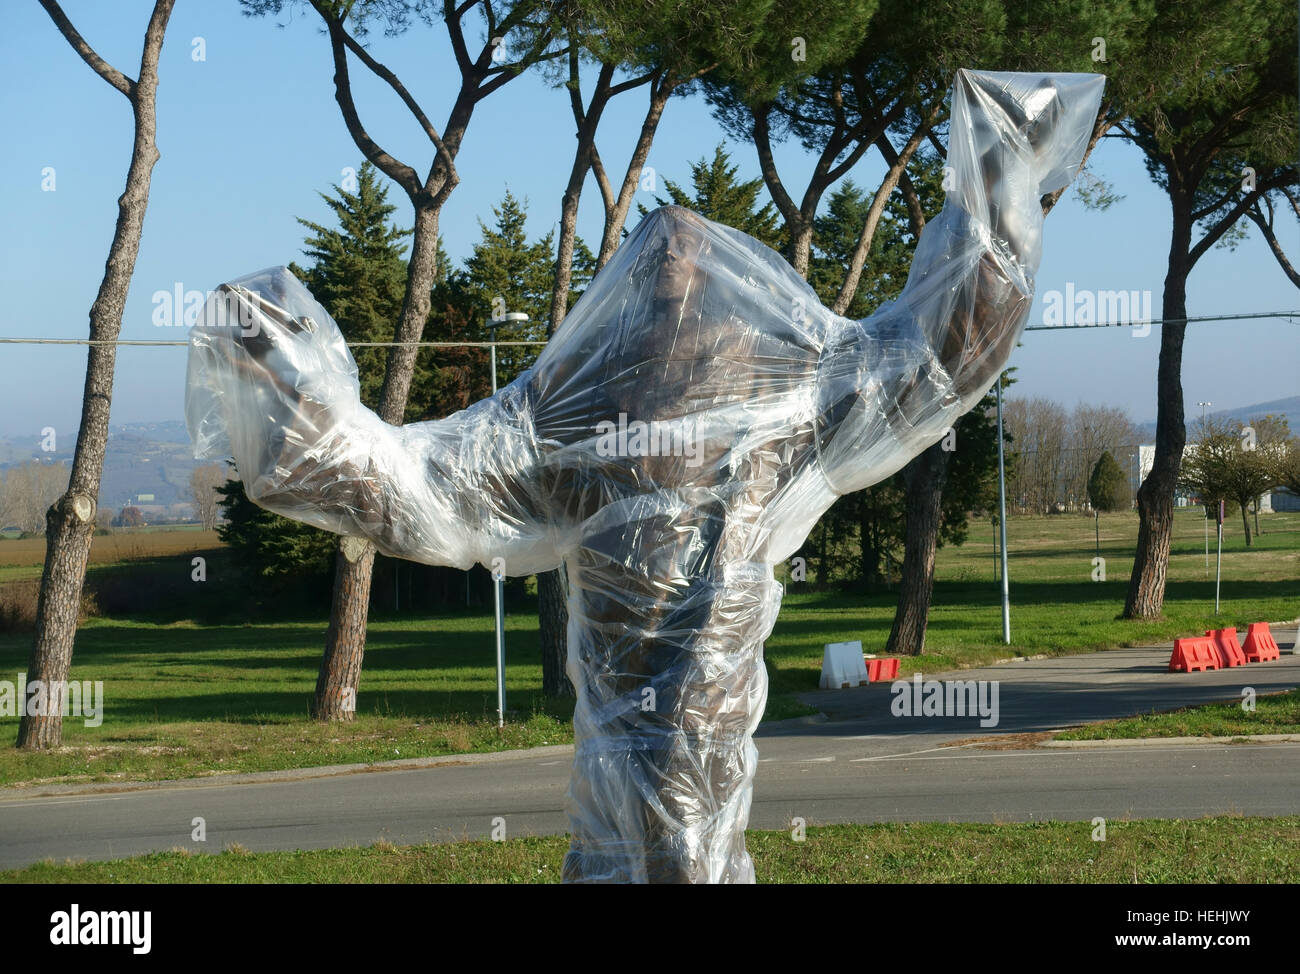 Une statue de bronze est recouverte de feuilles de plastique à l'extérieur de l'aéroport de Pérouse Banque D'Images